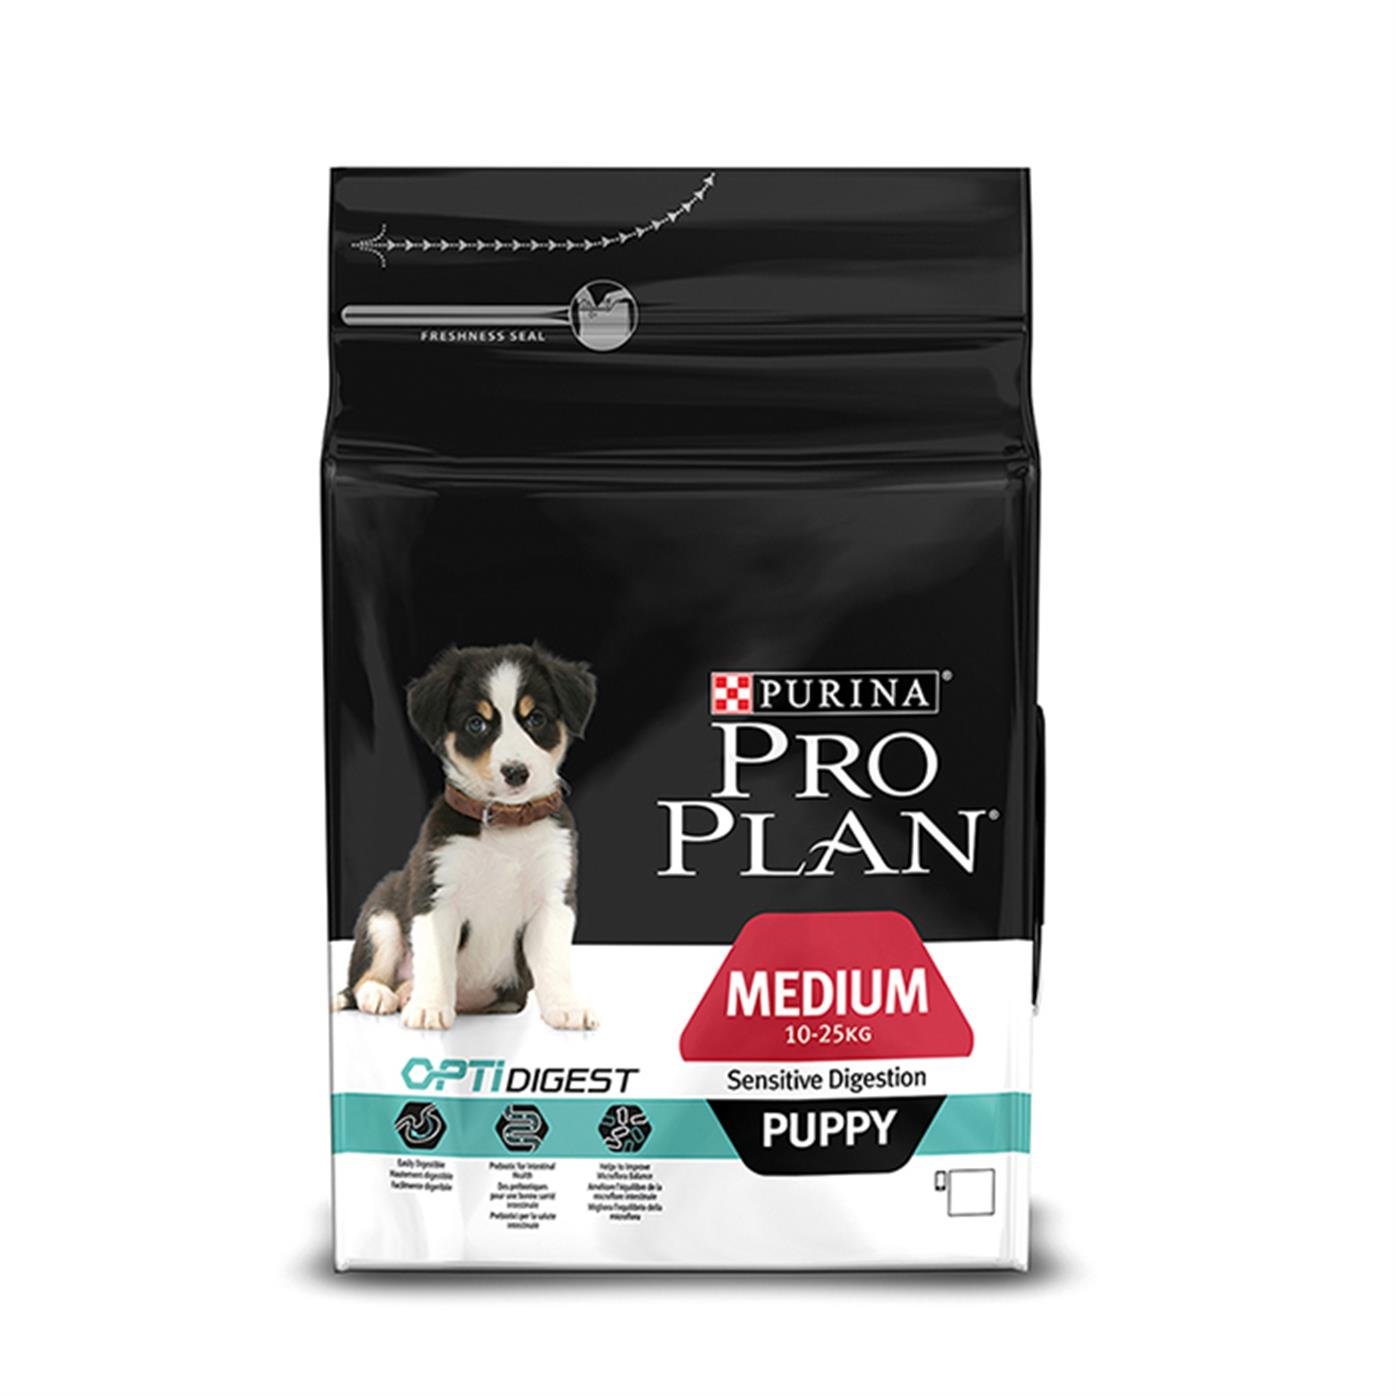 Pro Plan Medium Puppy Kuzu Etli Yavru Köpek Maması 3 Kg - 7613035214811 -  1030-12280840 - PET GROSS ® | Evcil Hayvanlarınız İçin Her Şey PetGross'ta  - Pro Plan